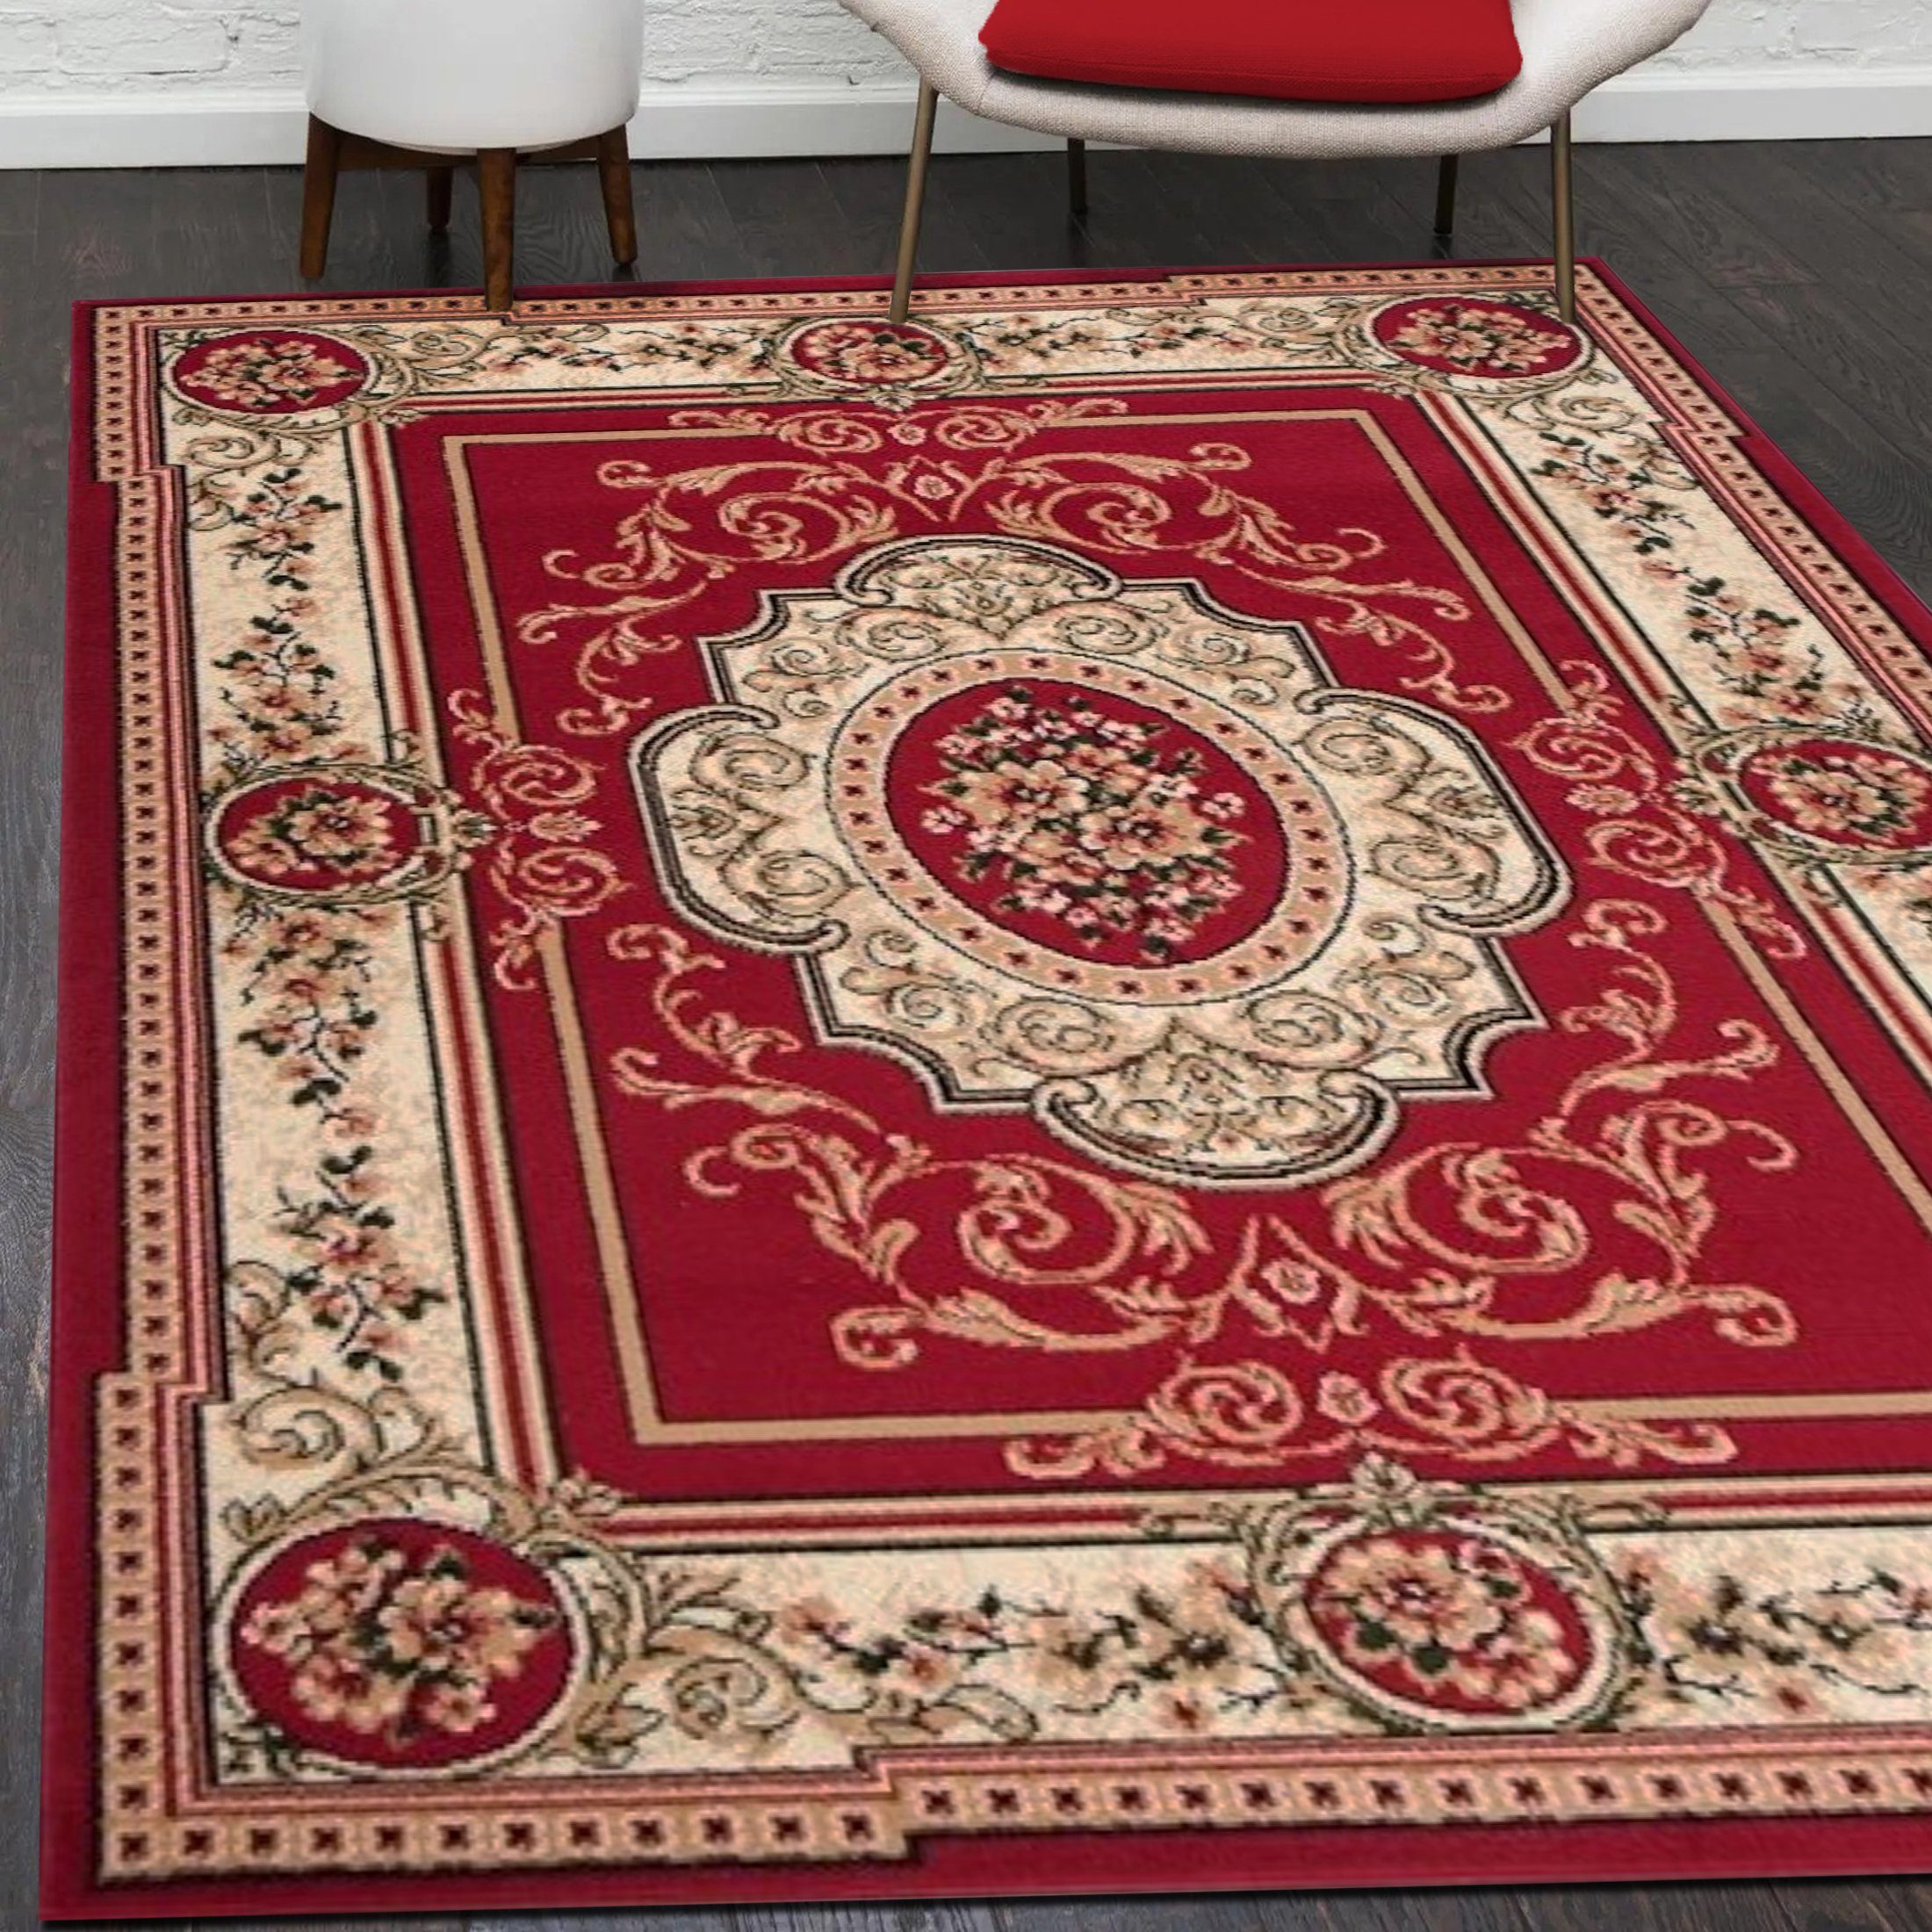 Orientteppich Orientalisch Vintage Teppich Kurzflor Wohnzimmerteppich Rot, Mazovia, 120 x 170 cm, Fußbodenheizung, Allergiker geeignet, Farbecht, Pflegeleicht Rot / F744A-RED